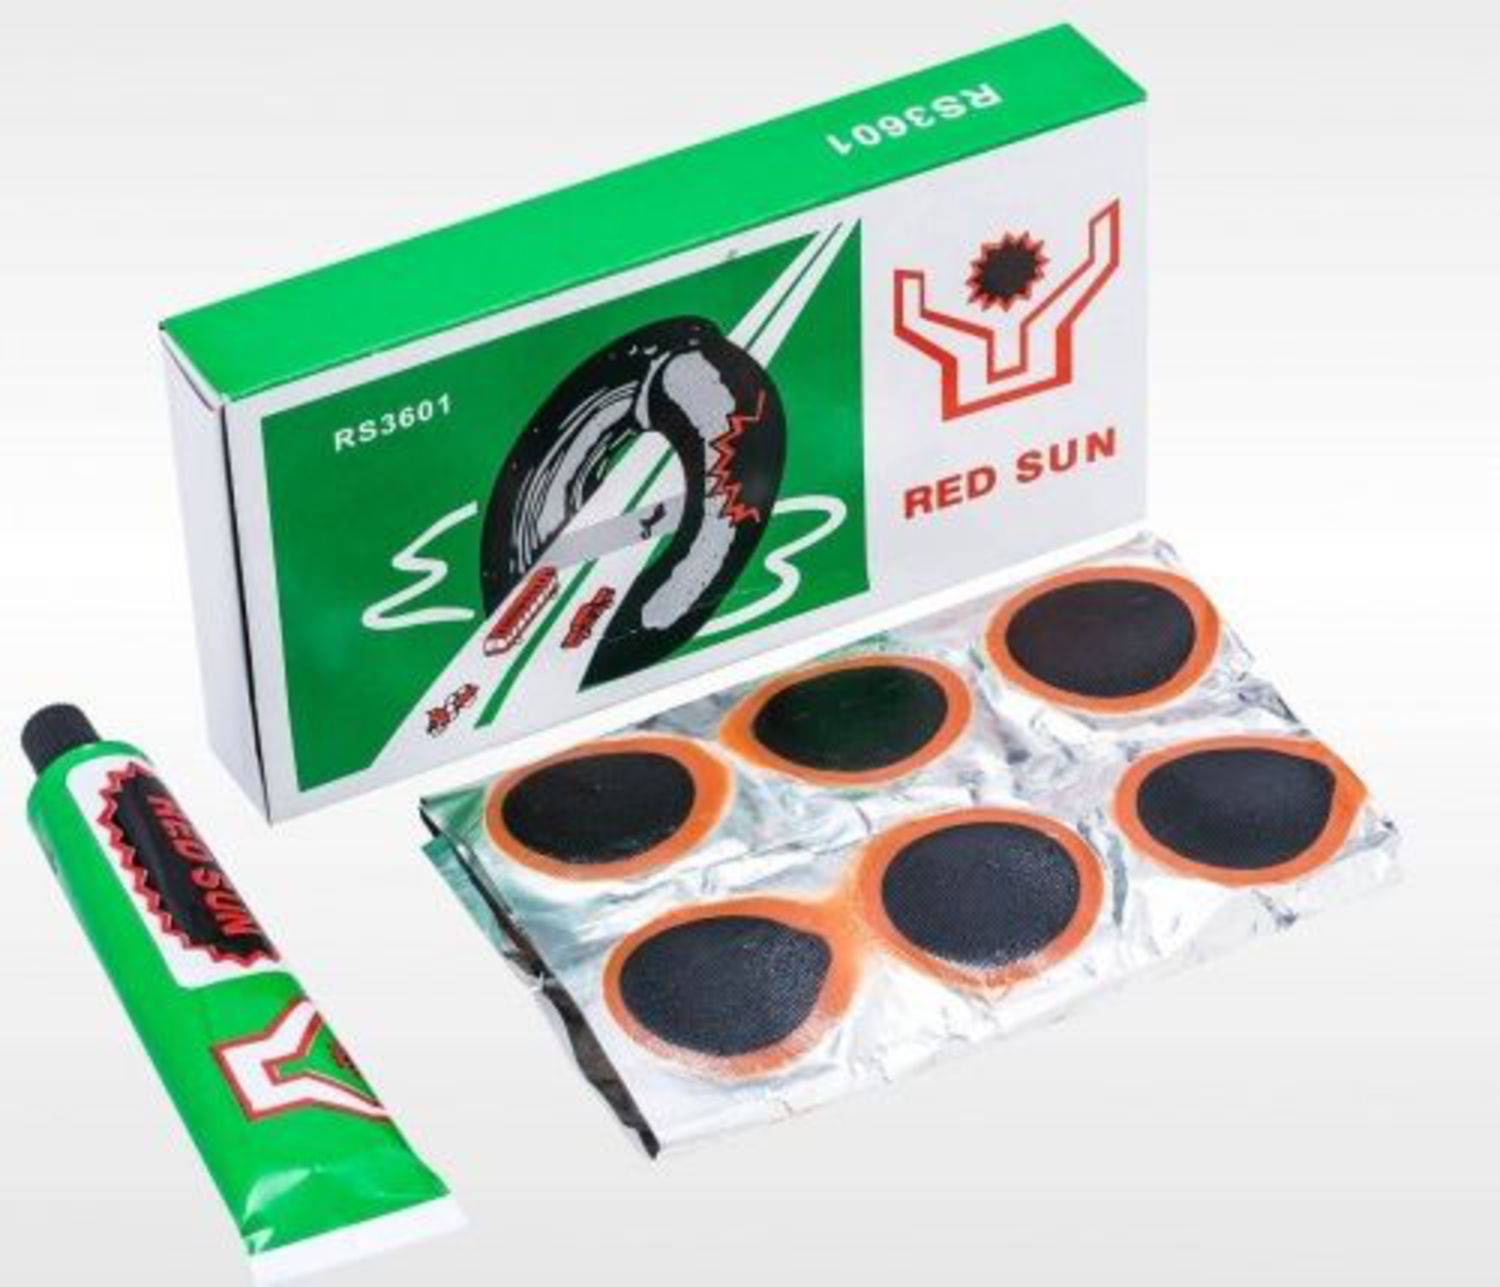 Заплатки для велосипеда. Велоаптечка Red Sun rs3601. Red Sun латки rs3601 тюбик. Набор для ремонта камеры 36 заплаток rs3601. Латки для камер велосипеда Red Sun rs3601.